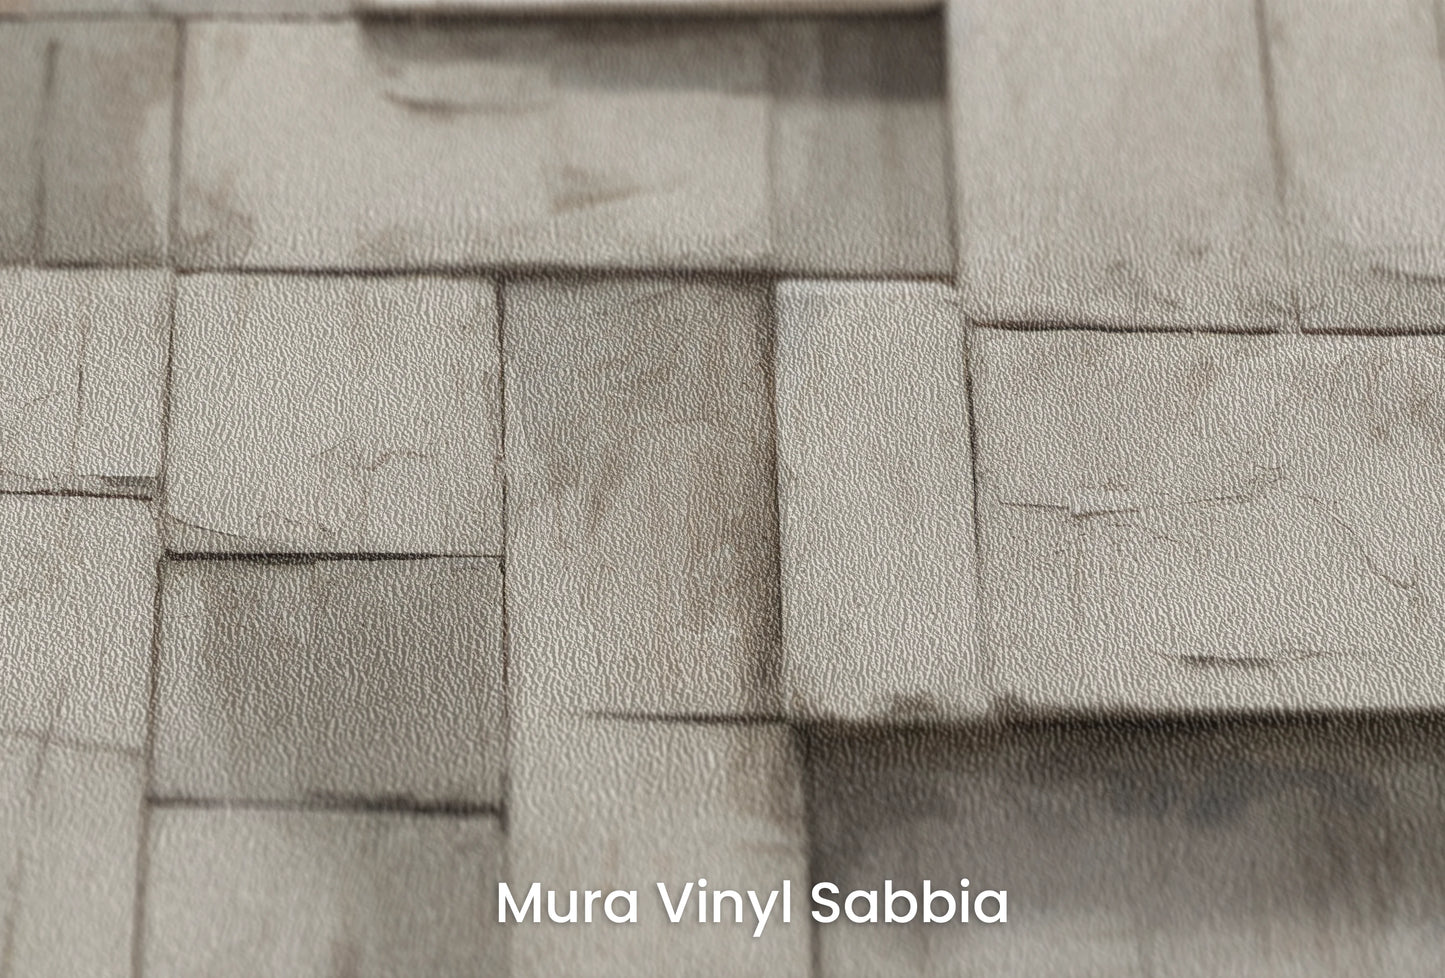 Zbliżenie na artystyczną fototapetę o nazwie Monochrome Mosaic na podłożu Mura Vinyl Sabbia struktura grubego ziarna piasku.